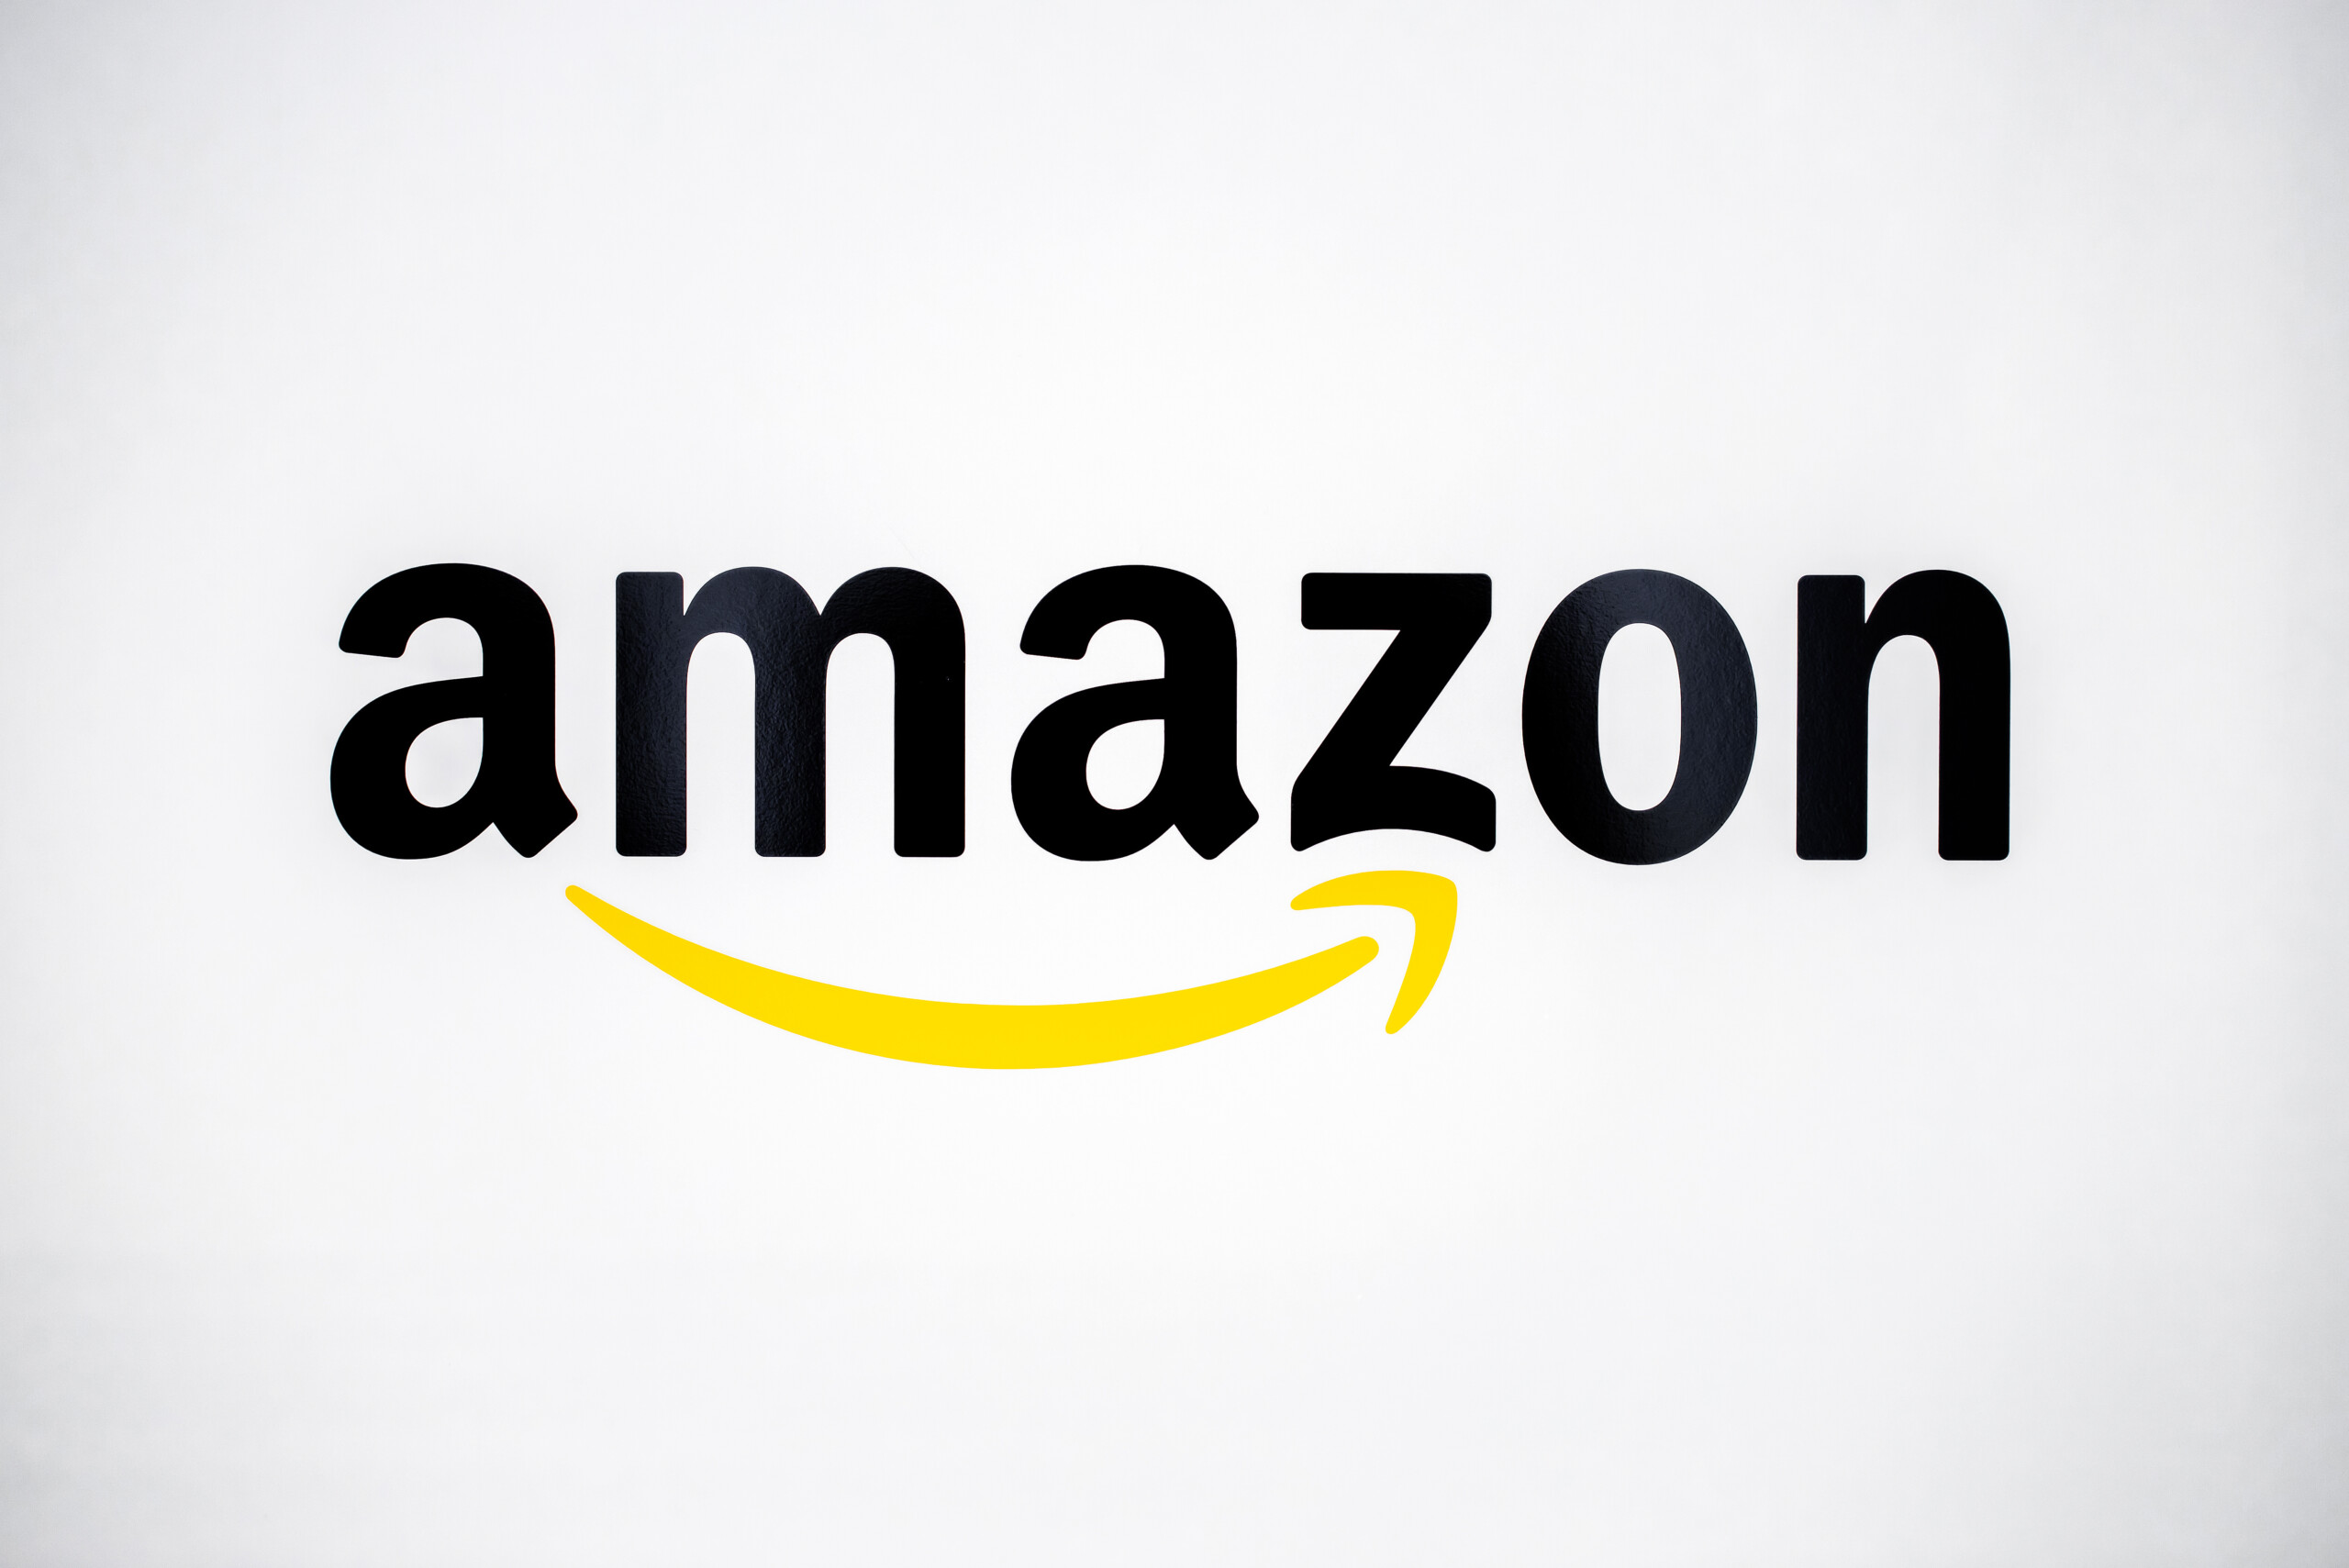 Amazon bekommt neuen Cloudcomputing-Boss und setzt in diesem Segment weiter auf KI